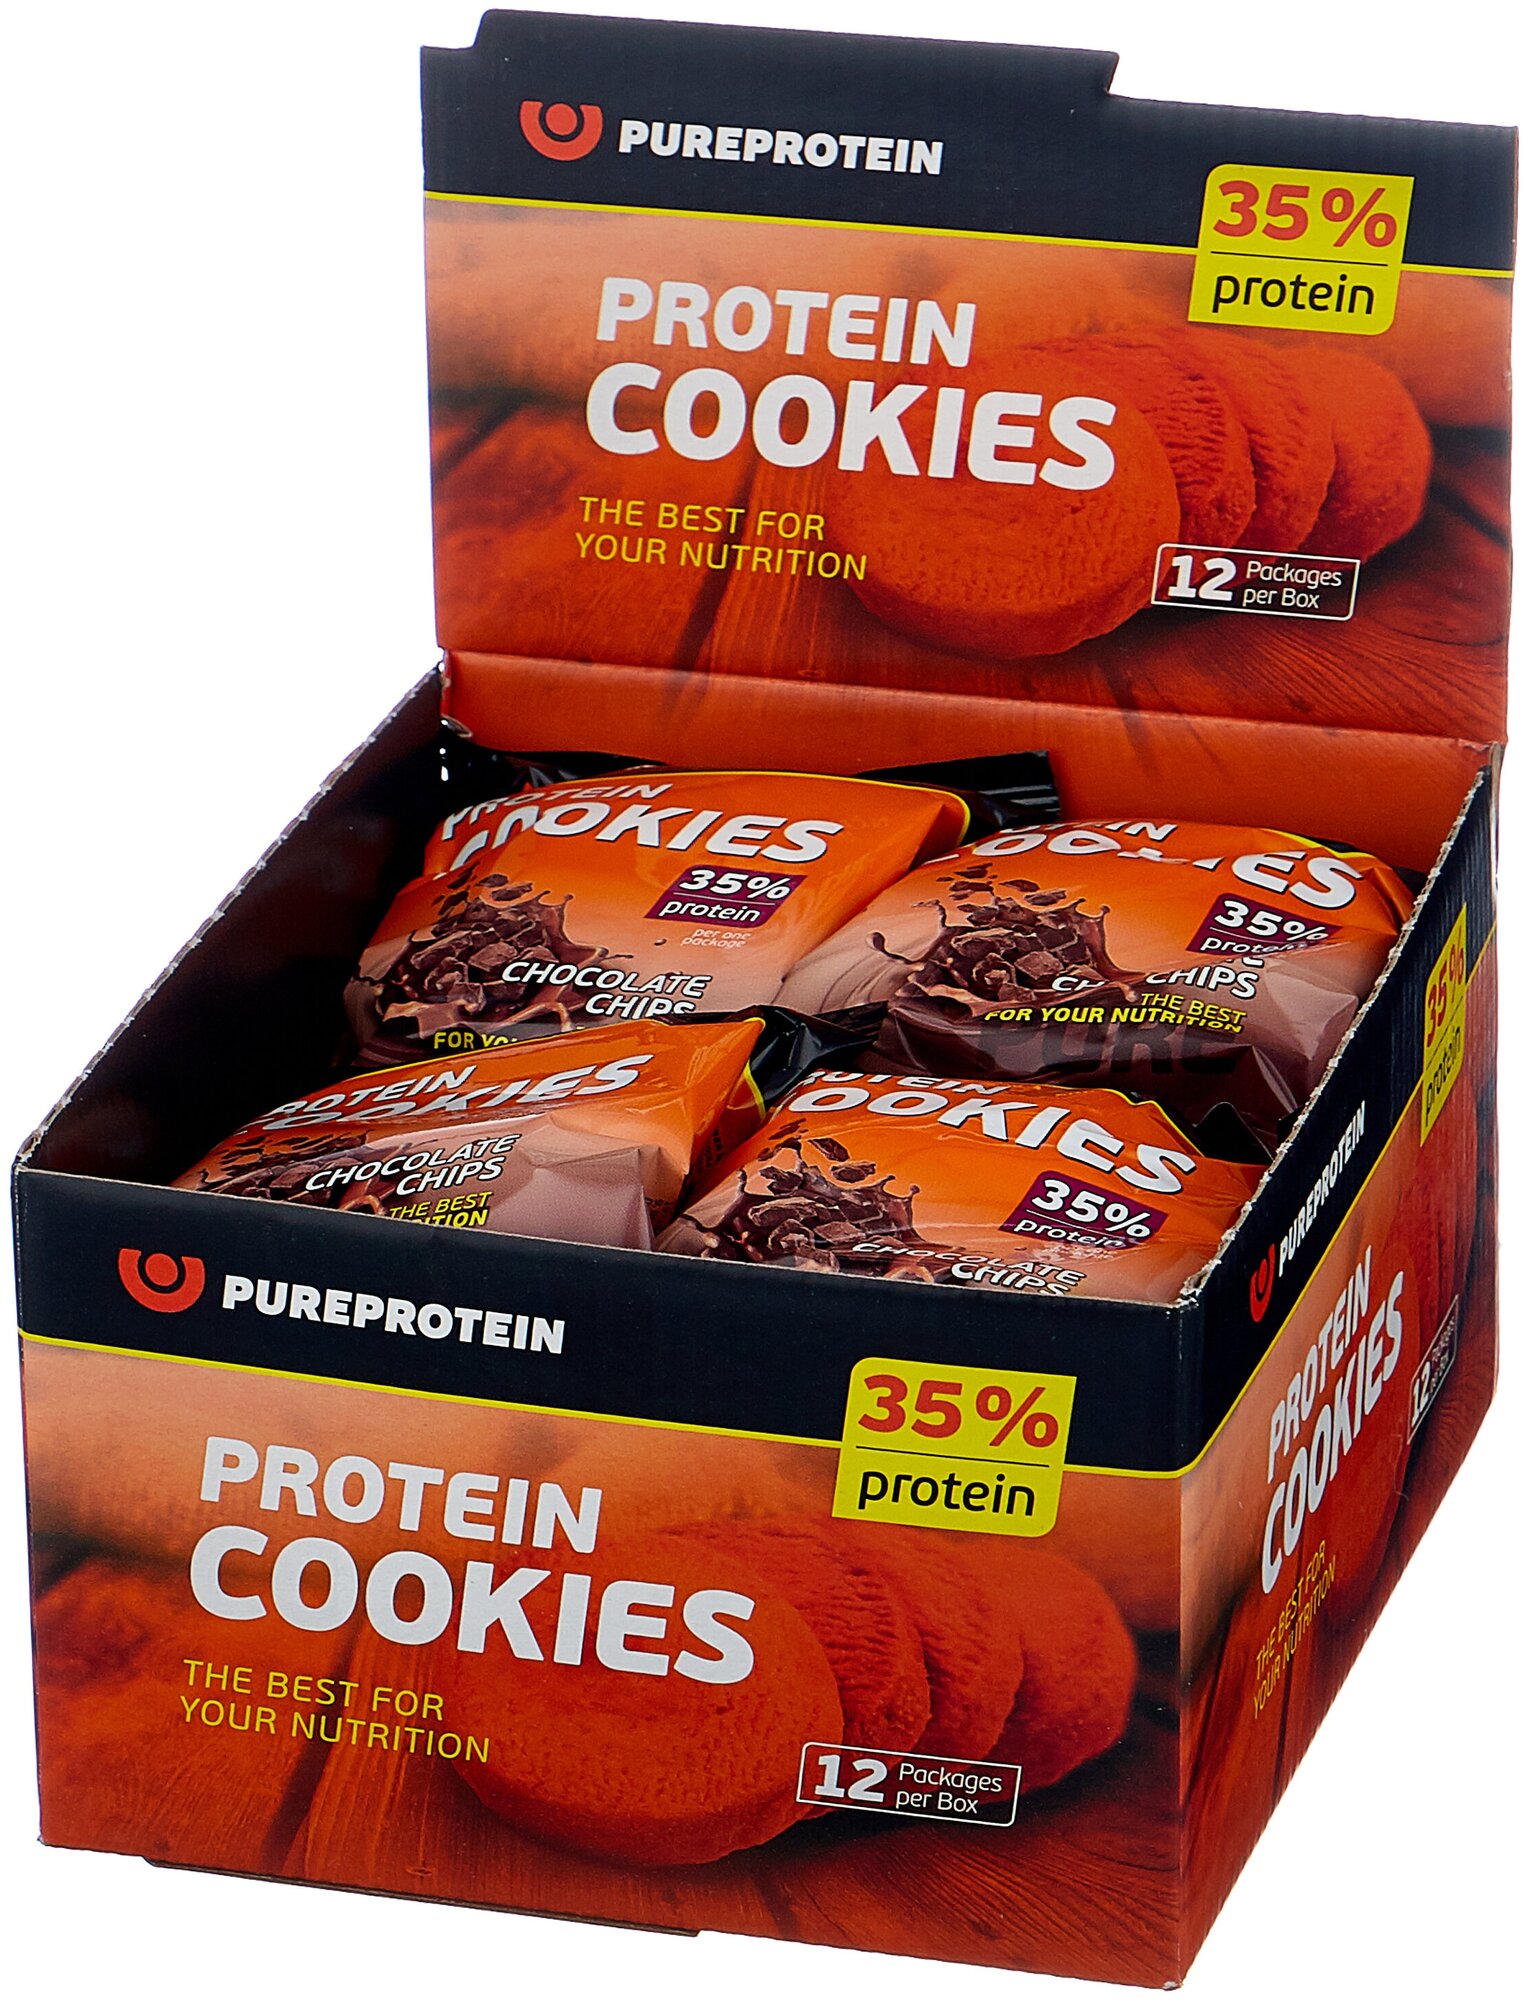 Печенье PUREPROTEIN Pure Protein белковое высококалорийное (1 шоубокс - 12 уп. по 2 печенья),Шоколадное с кусочками шоколада 960г